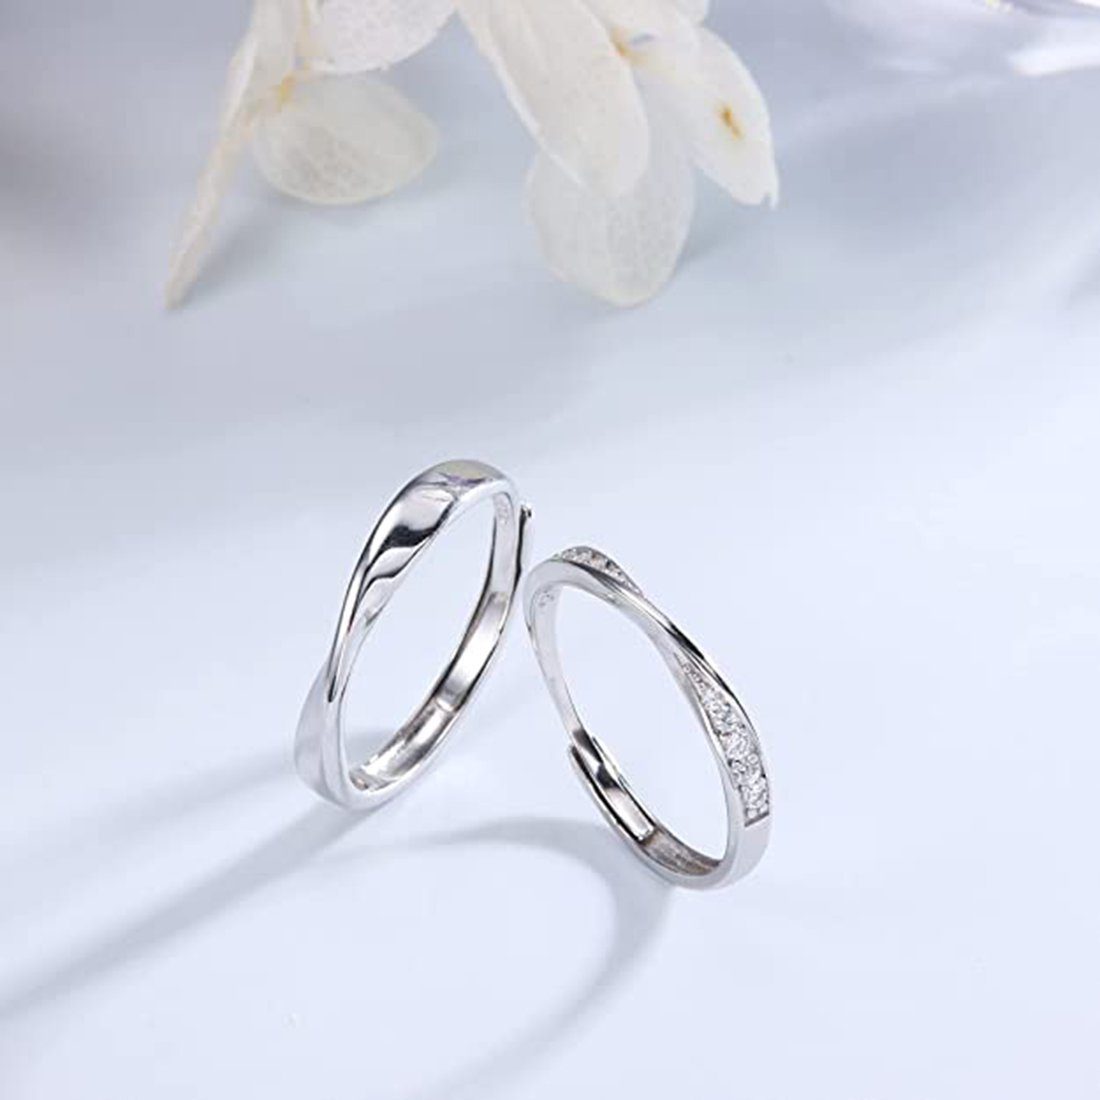 Haiaveng Fingerring 925 Silber Poliert Damen Ring Zirkonia Herren Verstellbarer